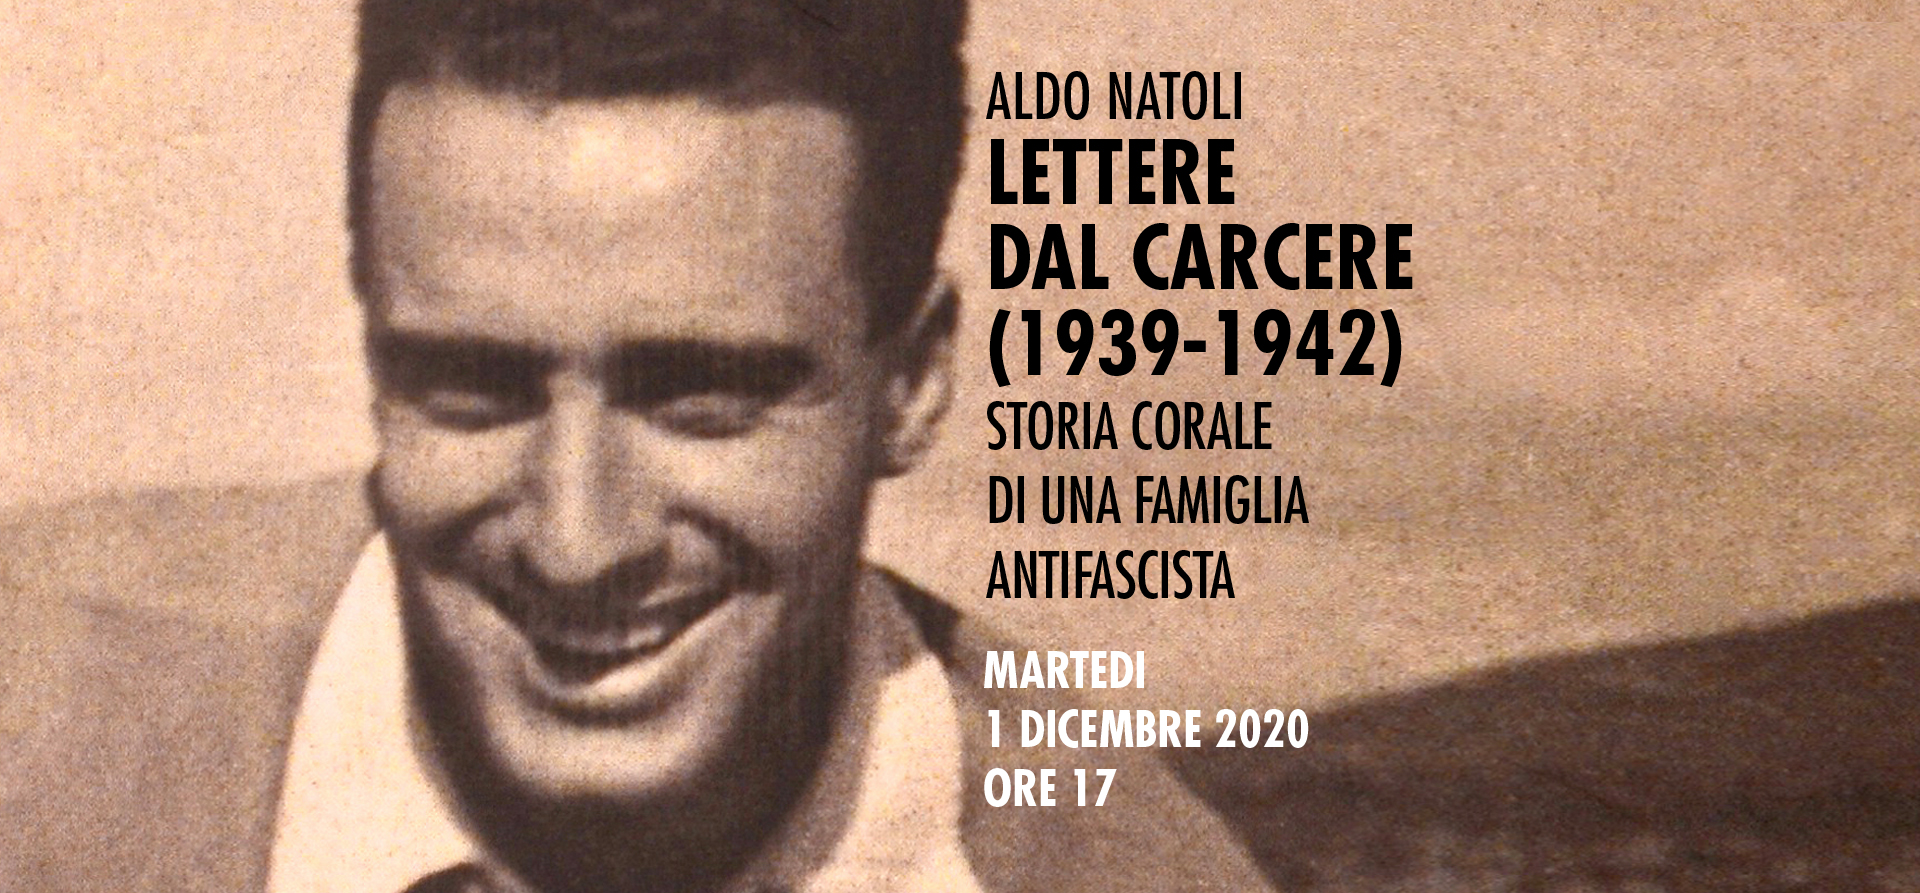 ALDO NATOLI. LETTERE DAL CARCERE (1939-1942)